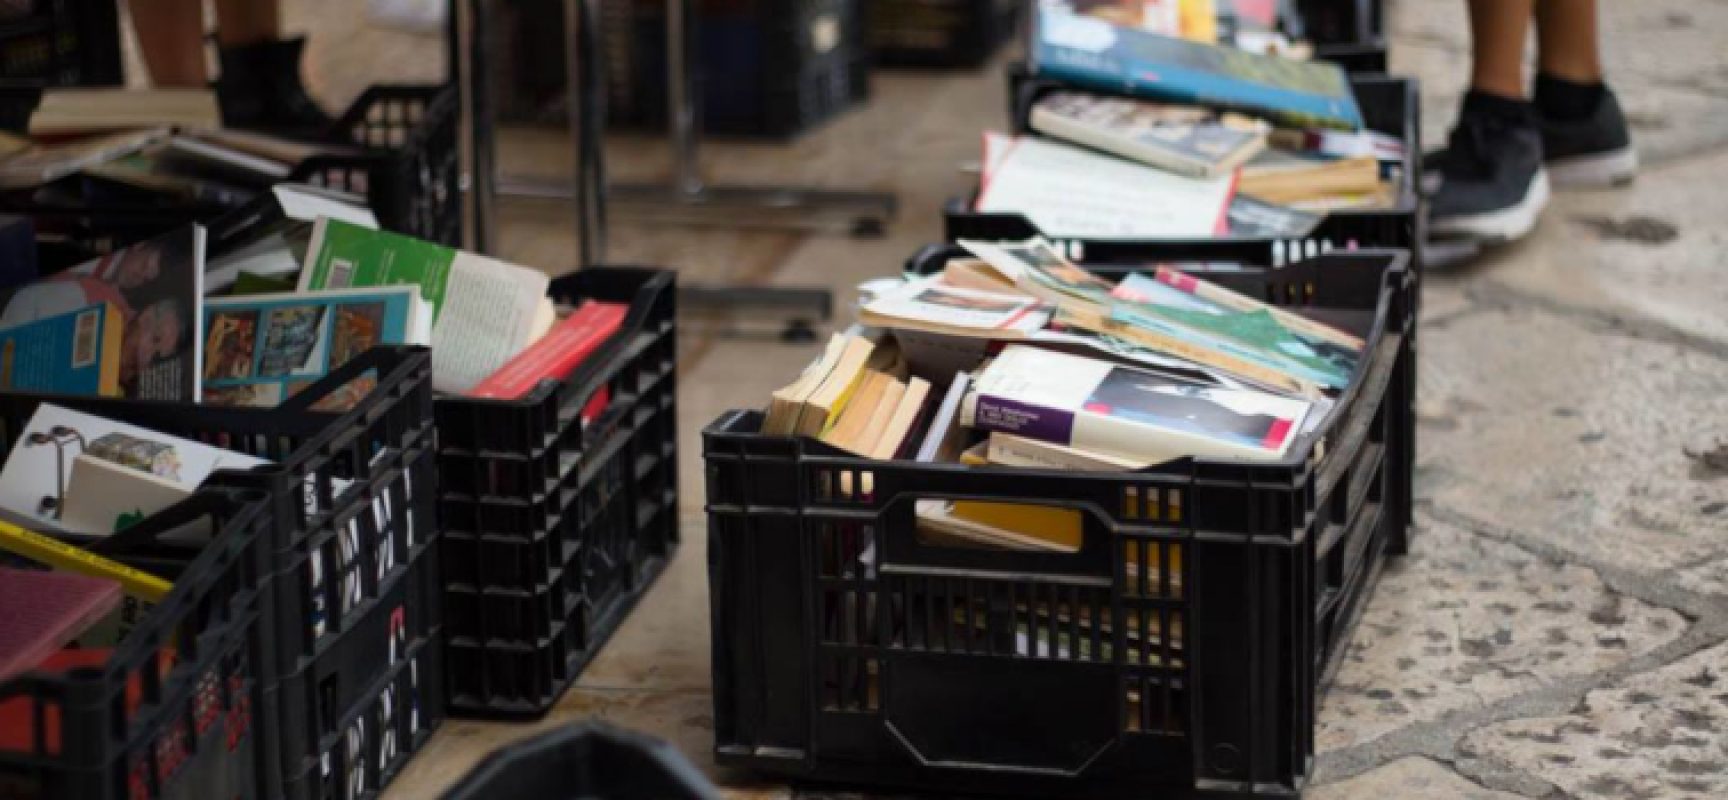 Campagna riciclo materiali, Borgo Antico: “Se i libri sono un rifiuto, li smaltiamo noi”